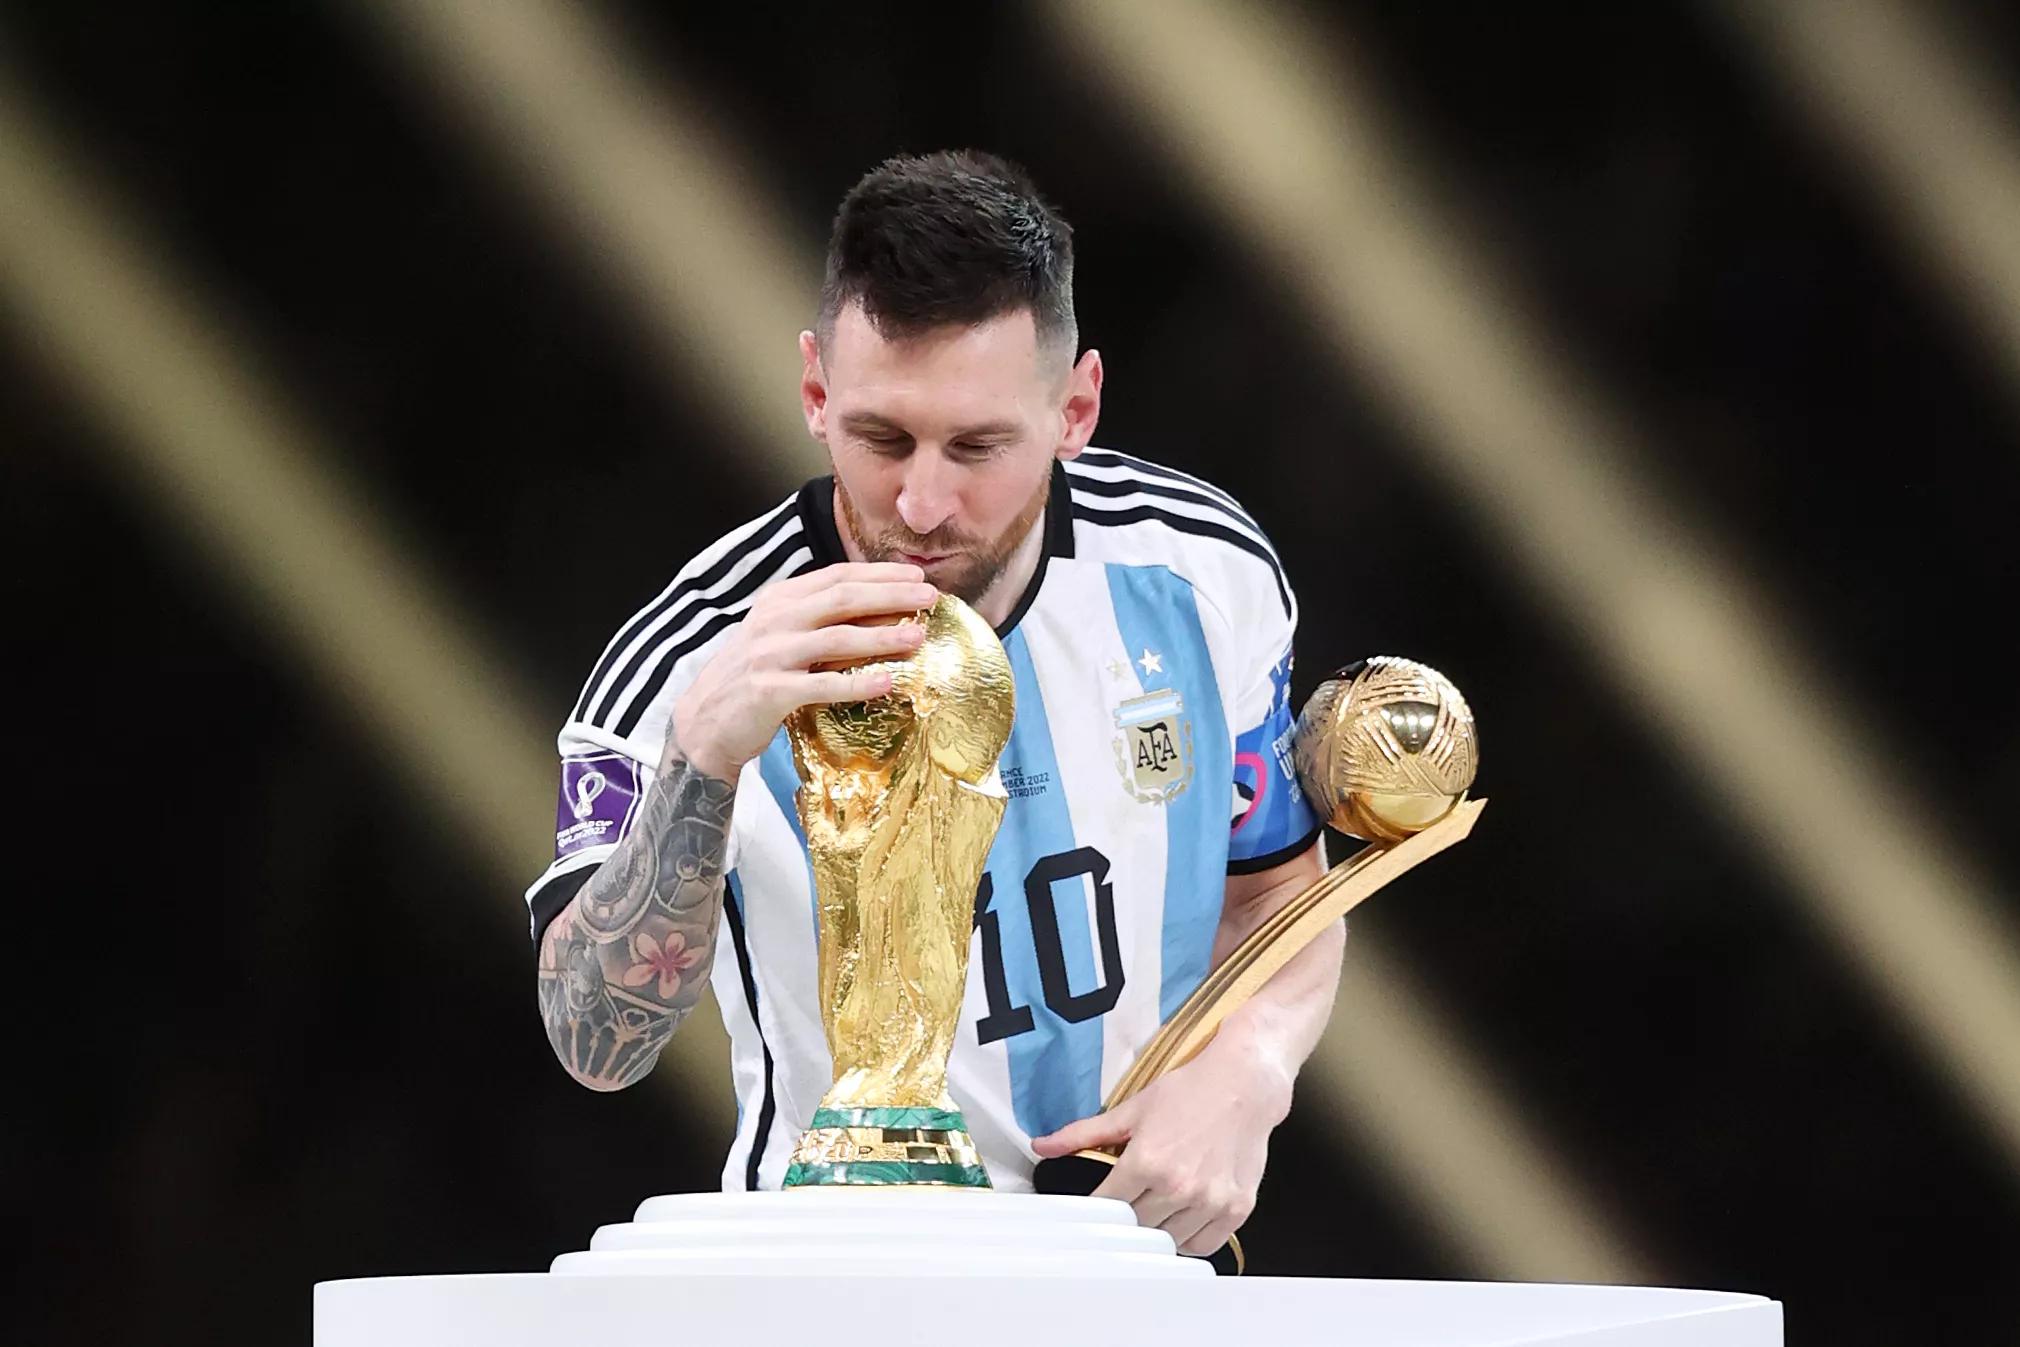 Messi đã làm nên lịch sử khi giành chiến thắng và trở thành vô địch thế giới. Các fan hâm mộ không thể bỏ qua những khoảnh khắc đầy cảm xúc và tiếp thêm động lực cho thần tượng của mình.